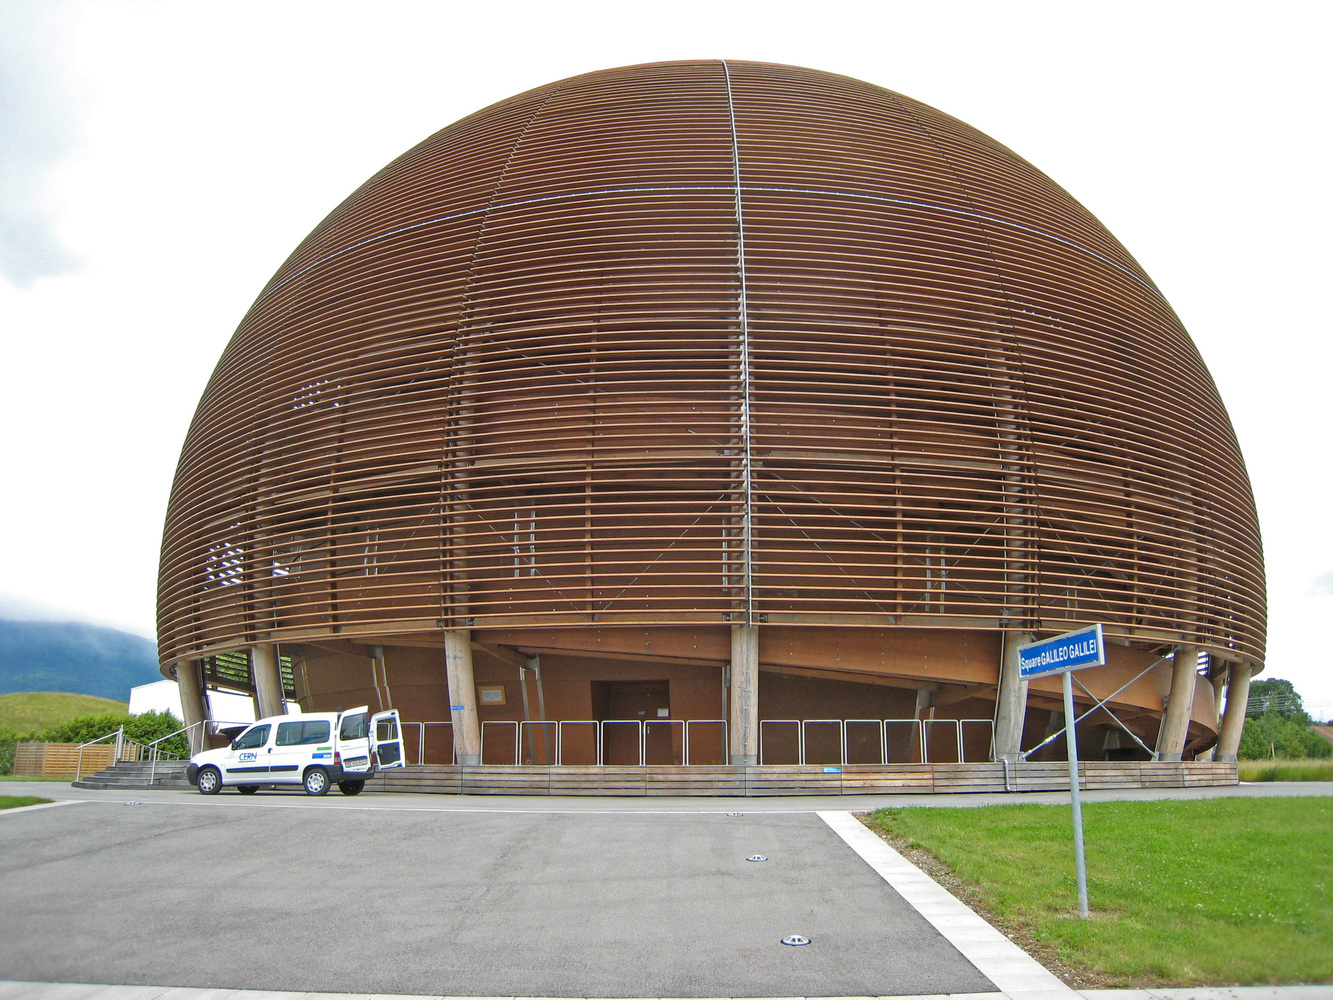 欧洲核子研究中心的科学与创新地球仪。